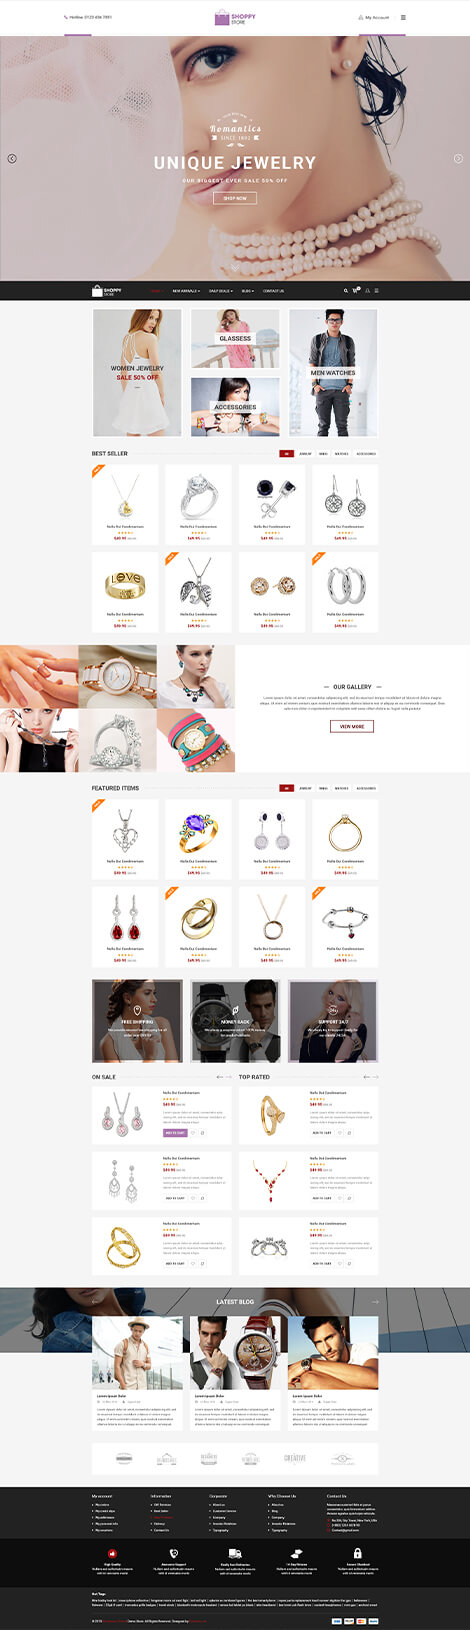 ShoppyStore 5 - Best Responsive Multi Purpose WooCommerce WordPress Theme
